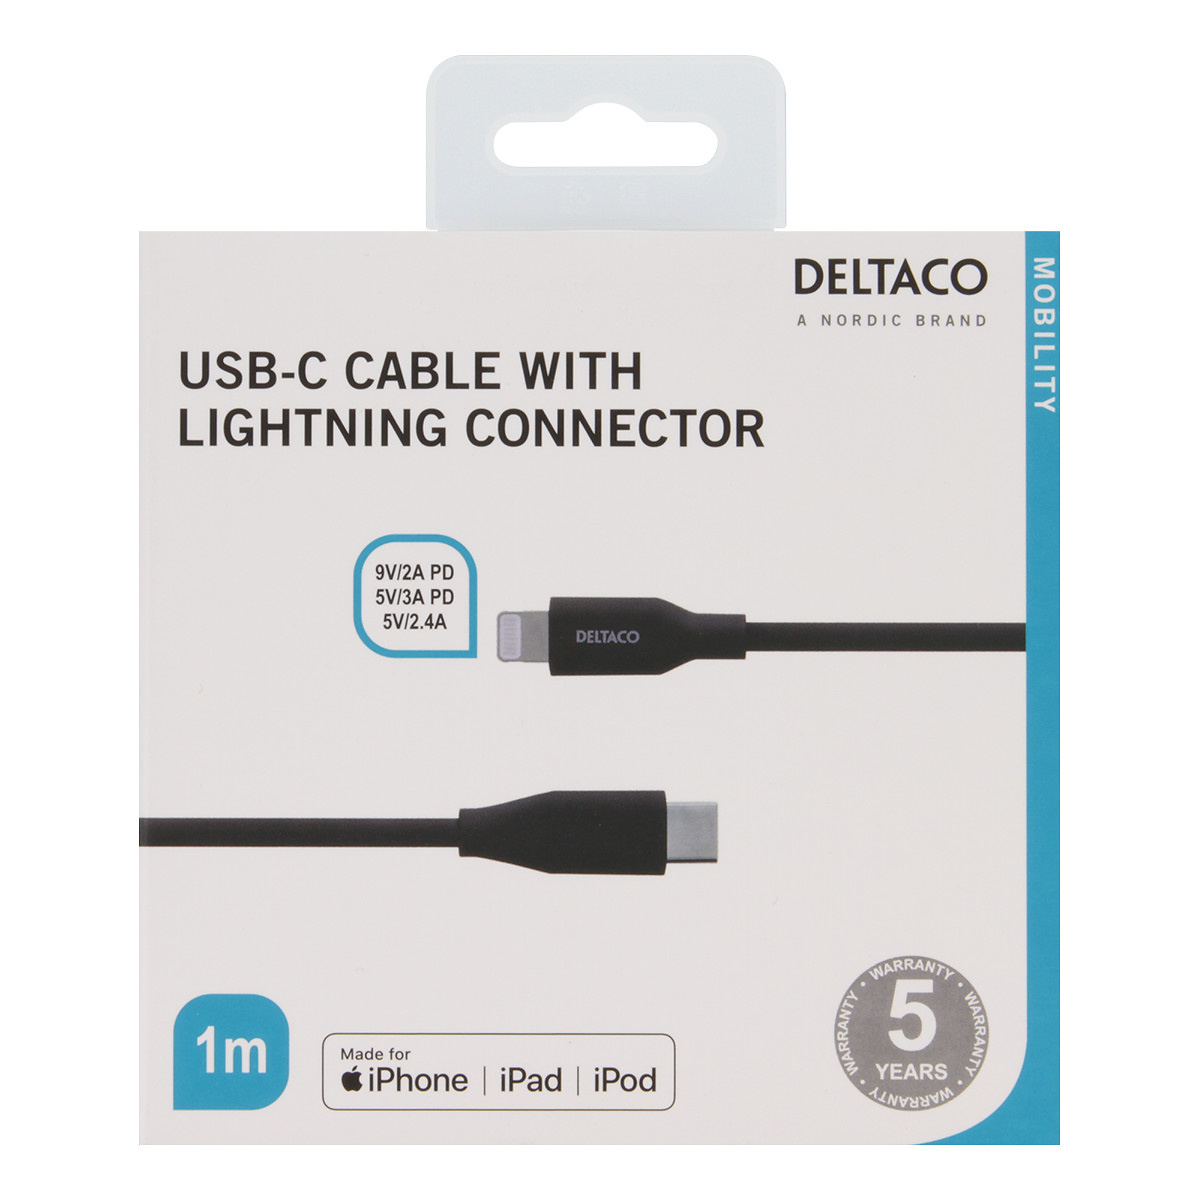 DELTACO USB-C Lightning kabel, 1m, 9V/2A 5V/3A PD, svart